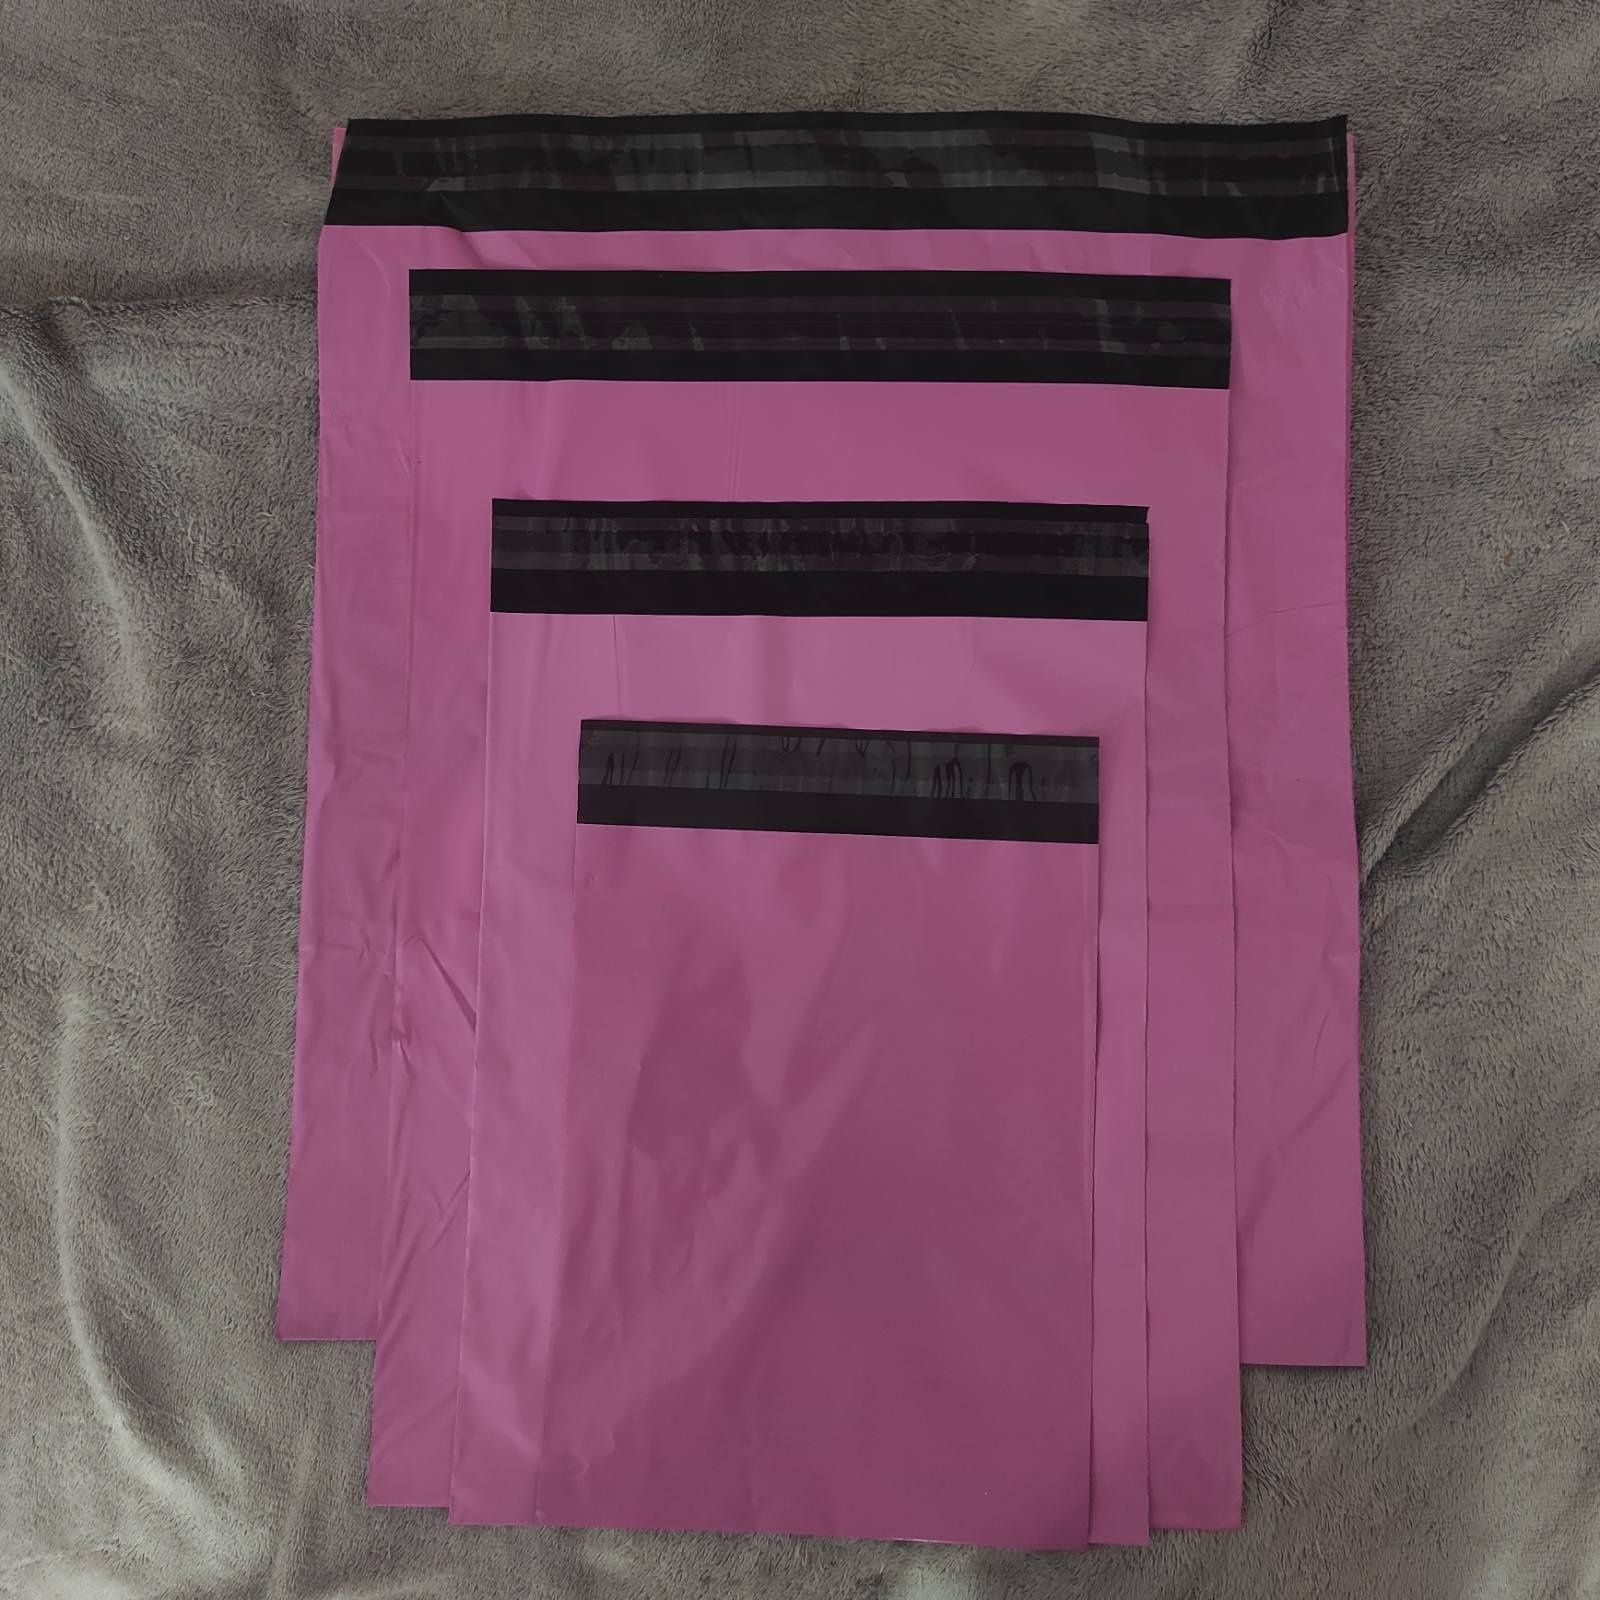 Курєрські пакети барбі посилка А3 А4 рожеві пакети почтові  упаковка